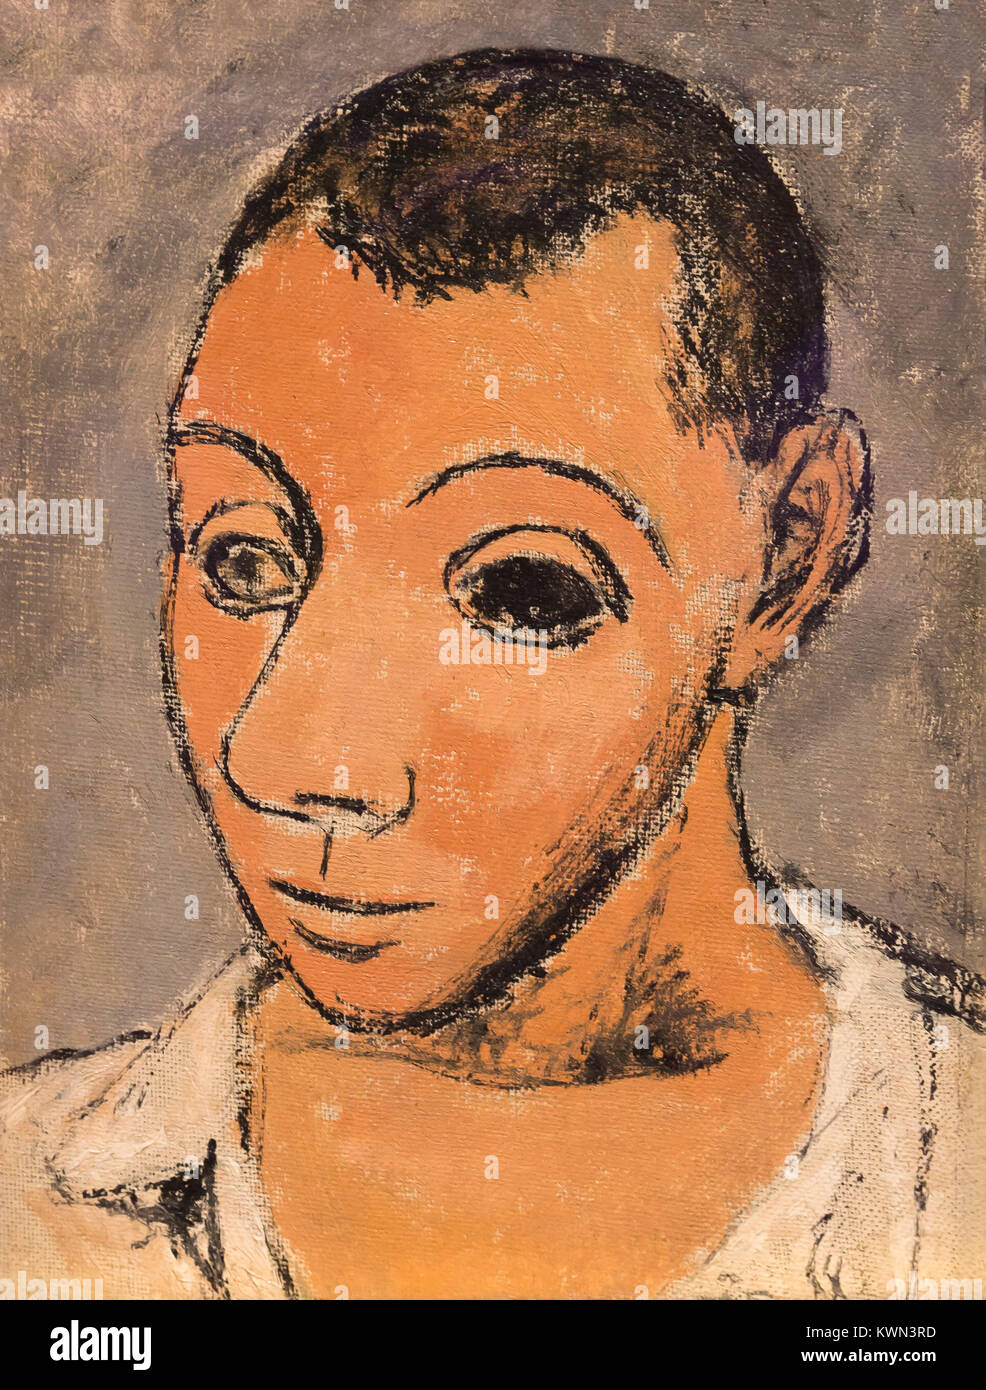 Self-portrait, Pablo Picasso, 1906 Foto Stock